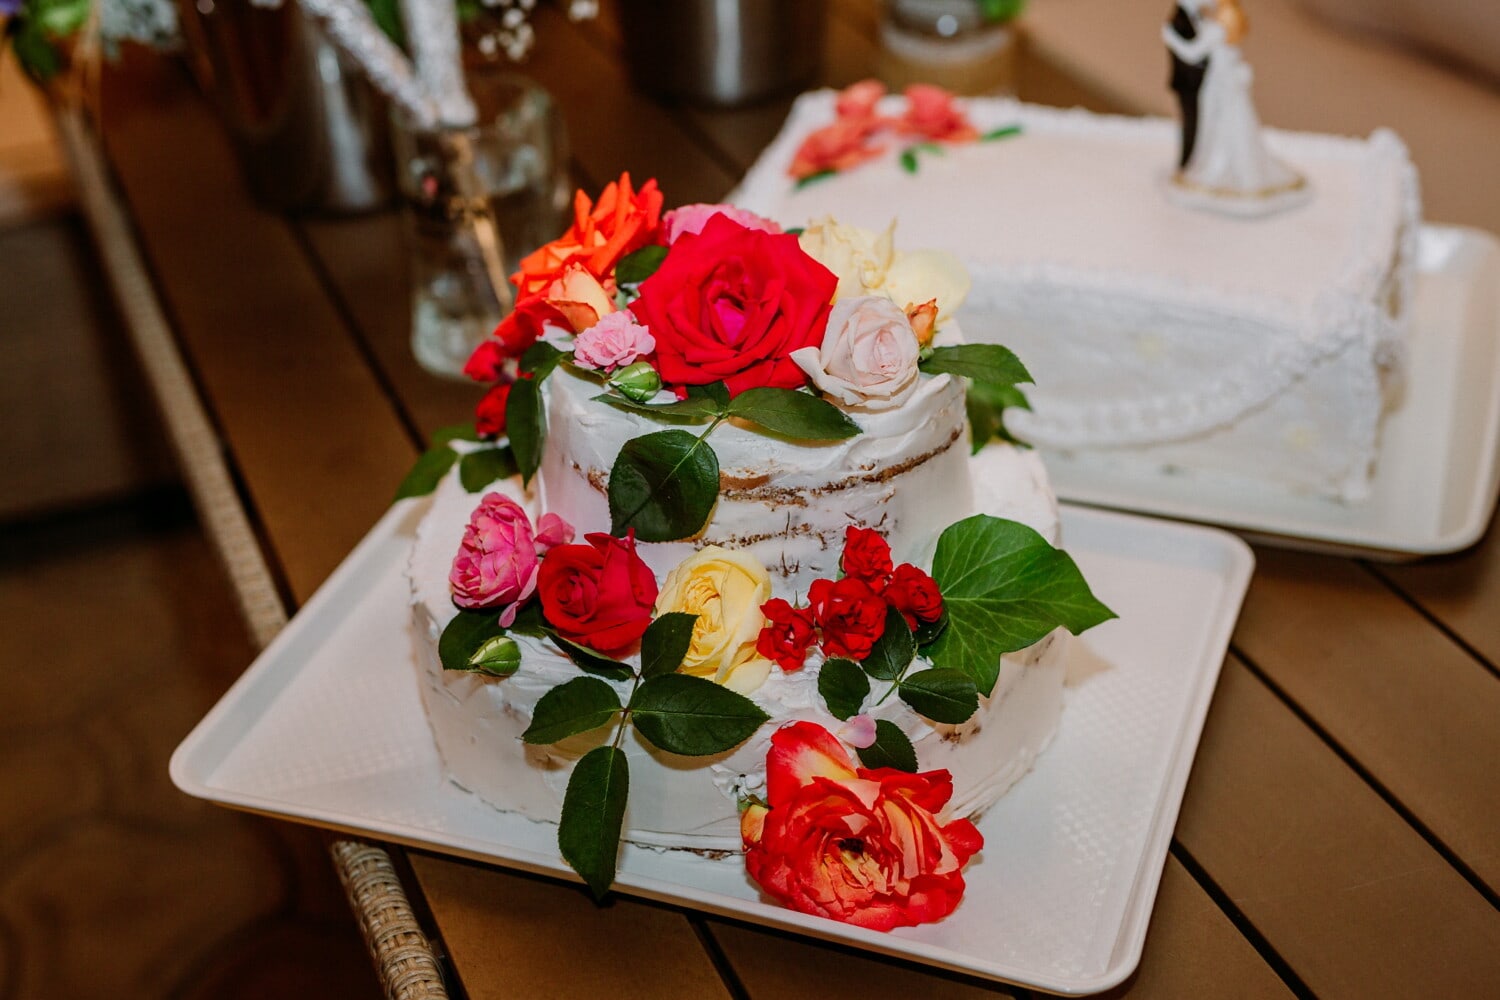 τριαντάφυλλα, γαμήλια τούρτα, λουλούδι, Αγάπη, μπουκέτο, Γάμος, ρύθμιση, τριαντάφυλλο, διακόσμηση, τροφίμων